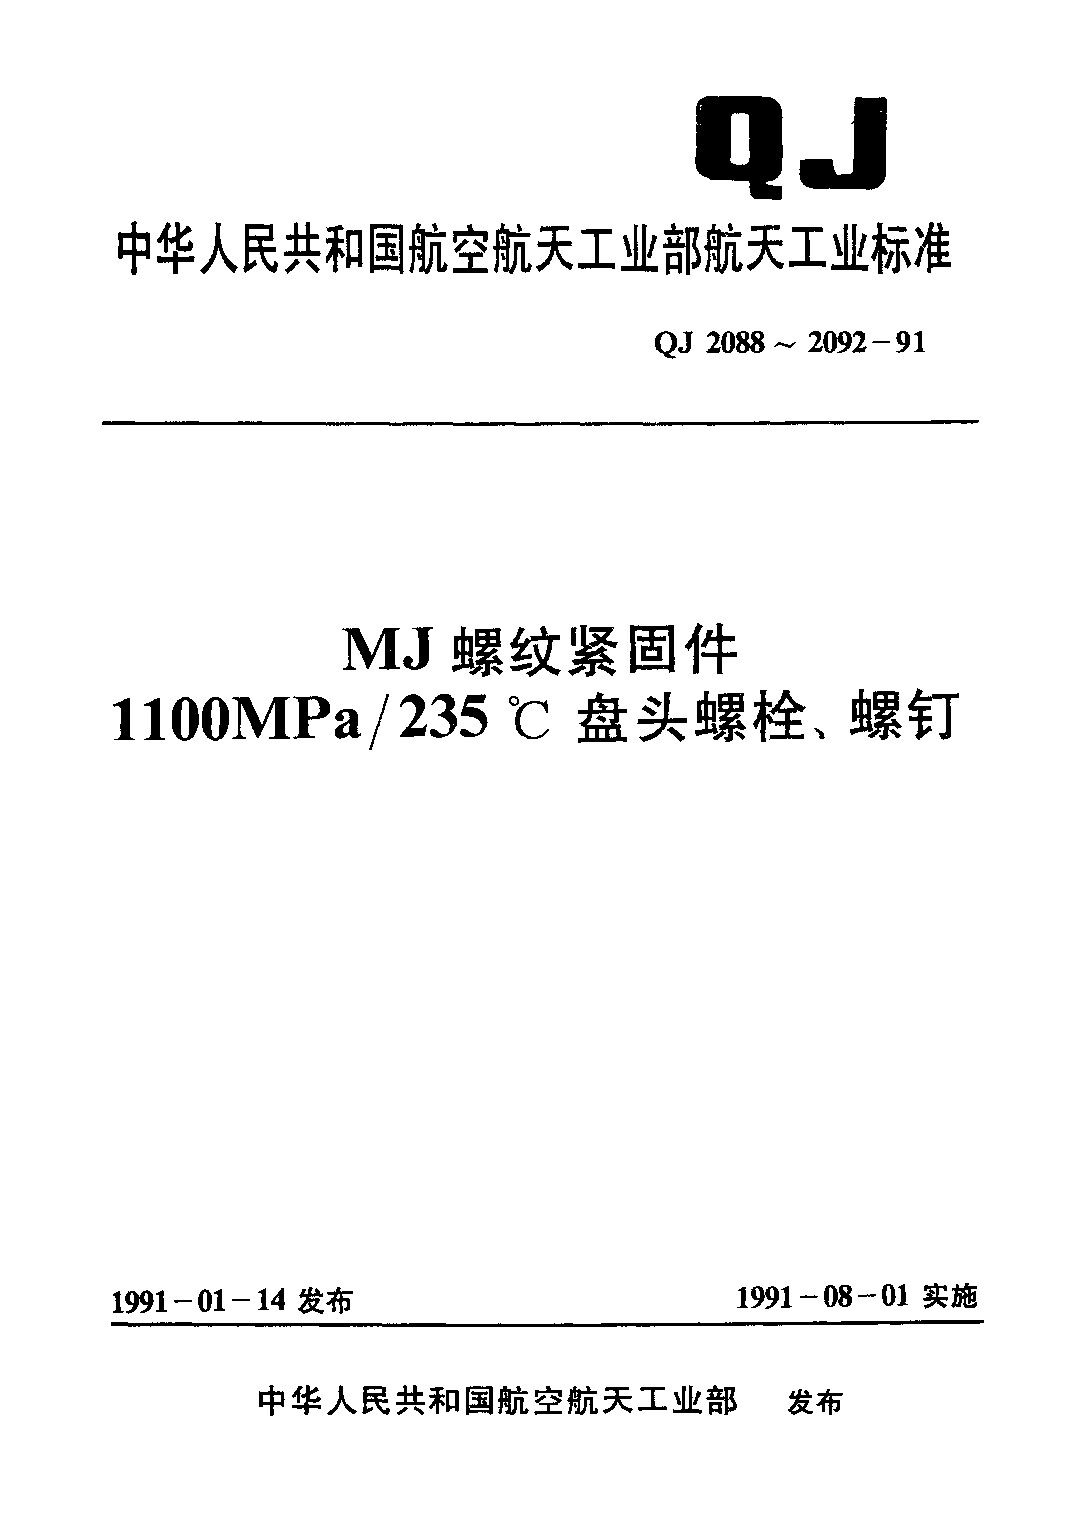 QJ 2091-1991封面图